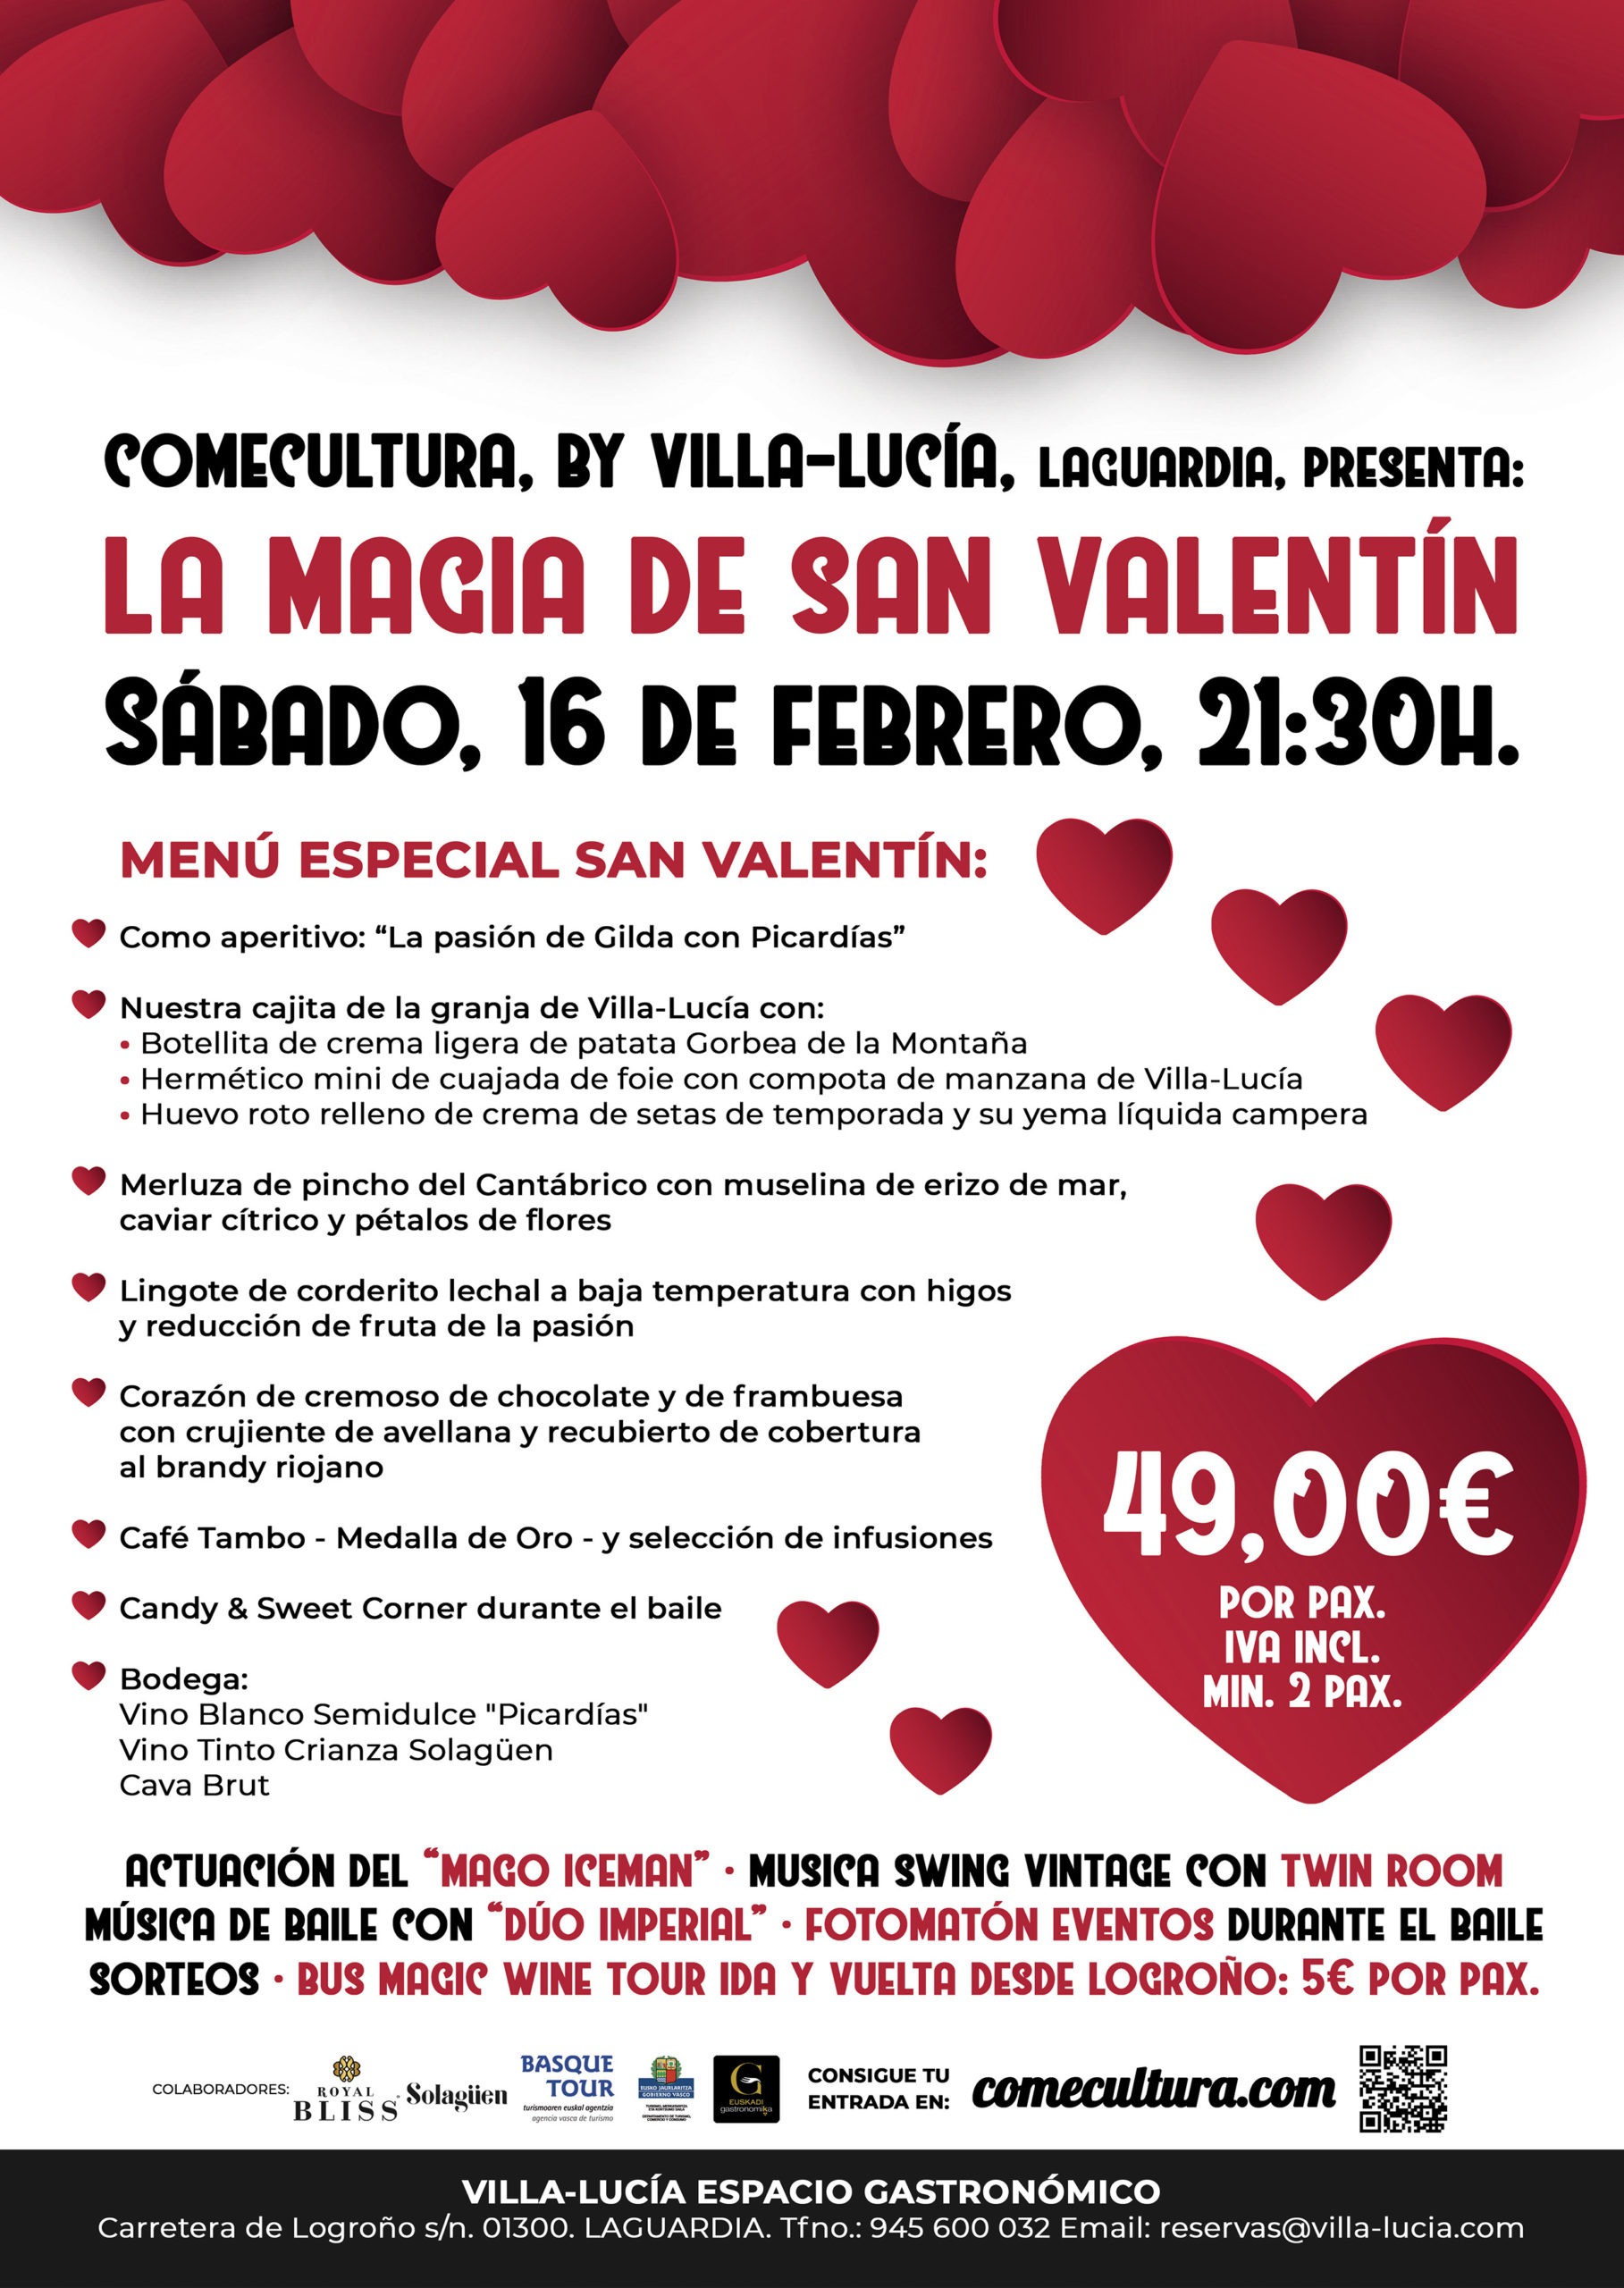 La magia de San Valentín by Villa-Lucía, 16 feb